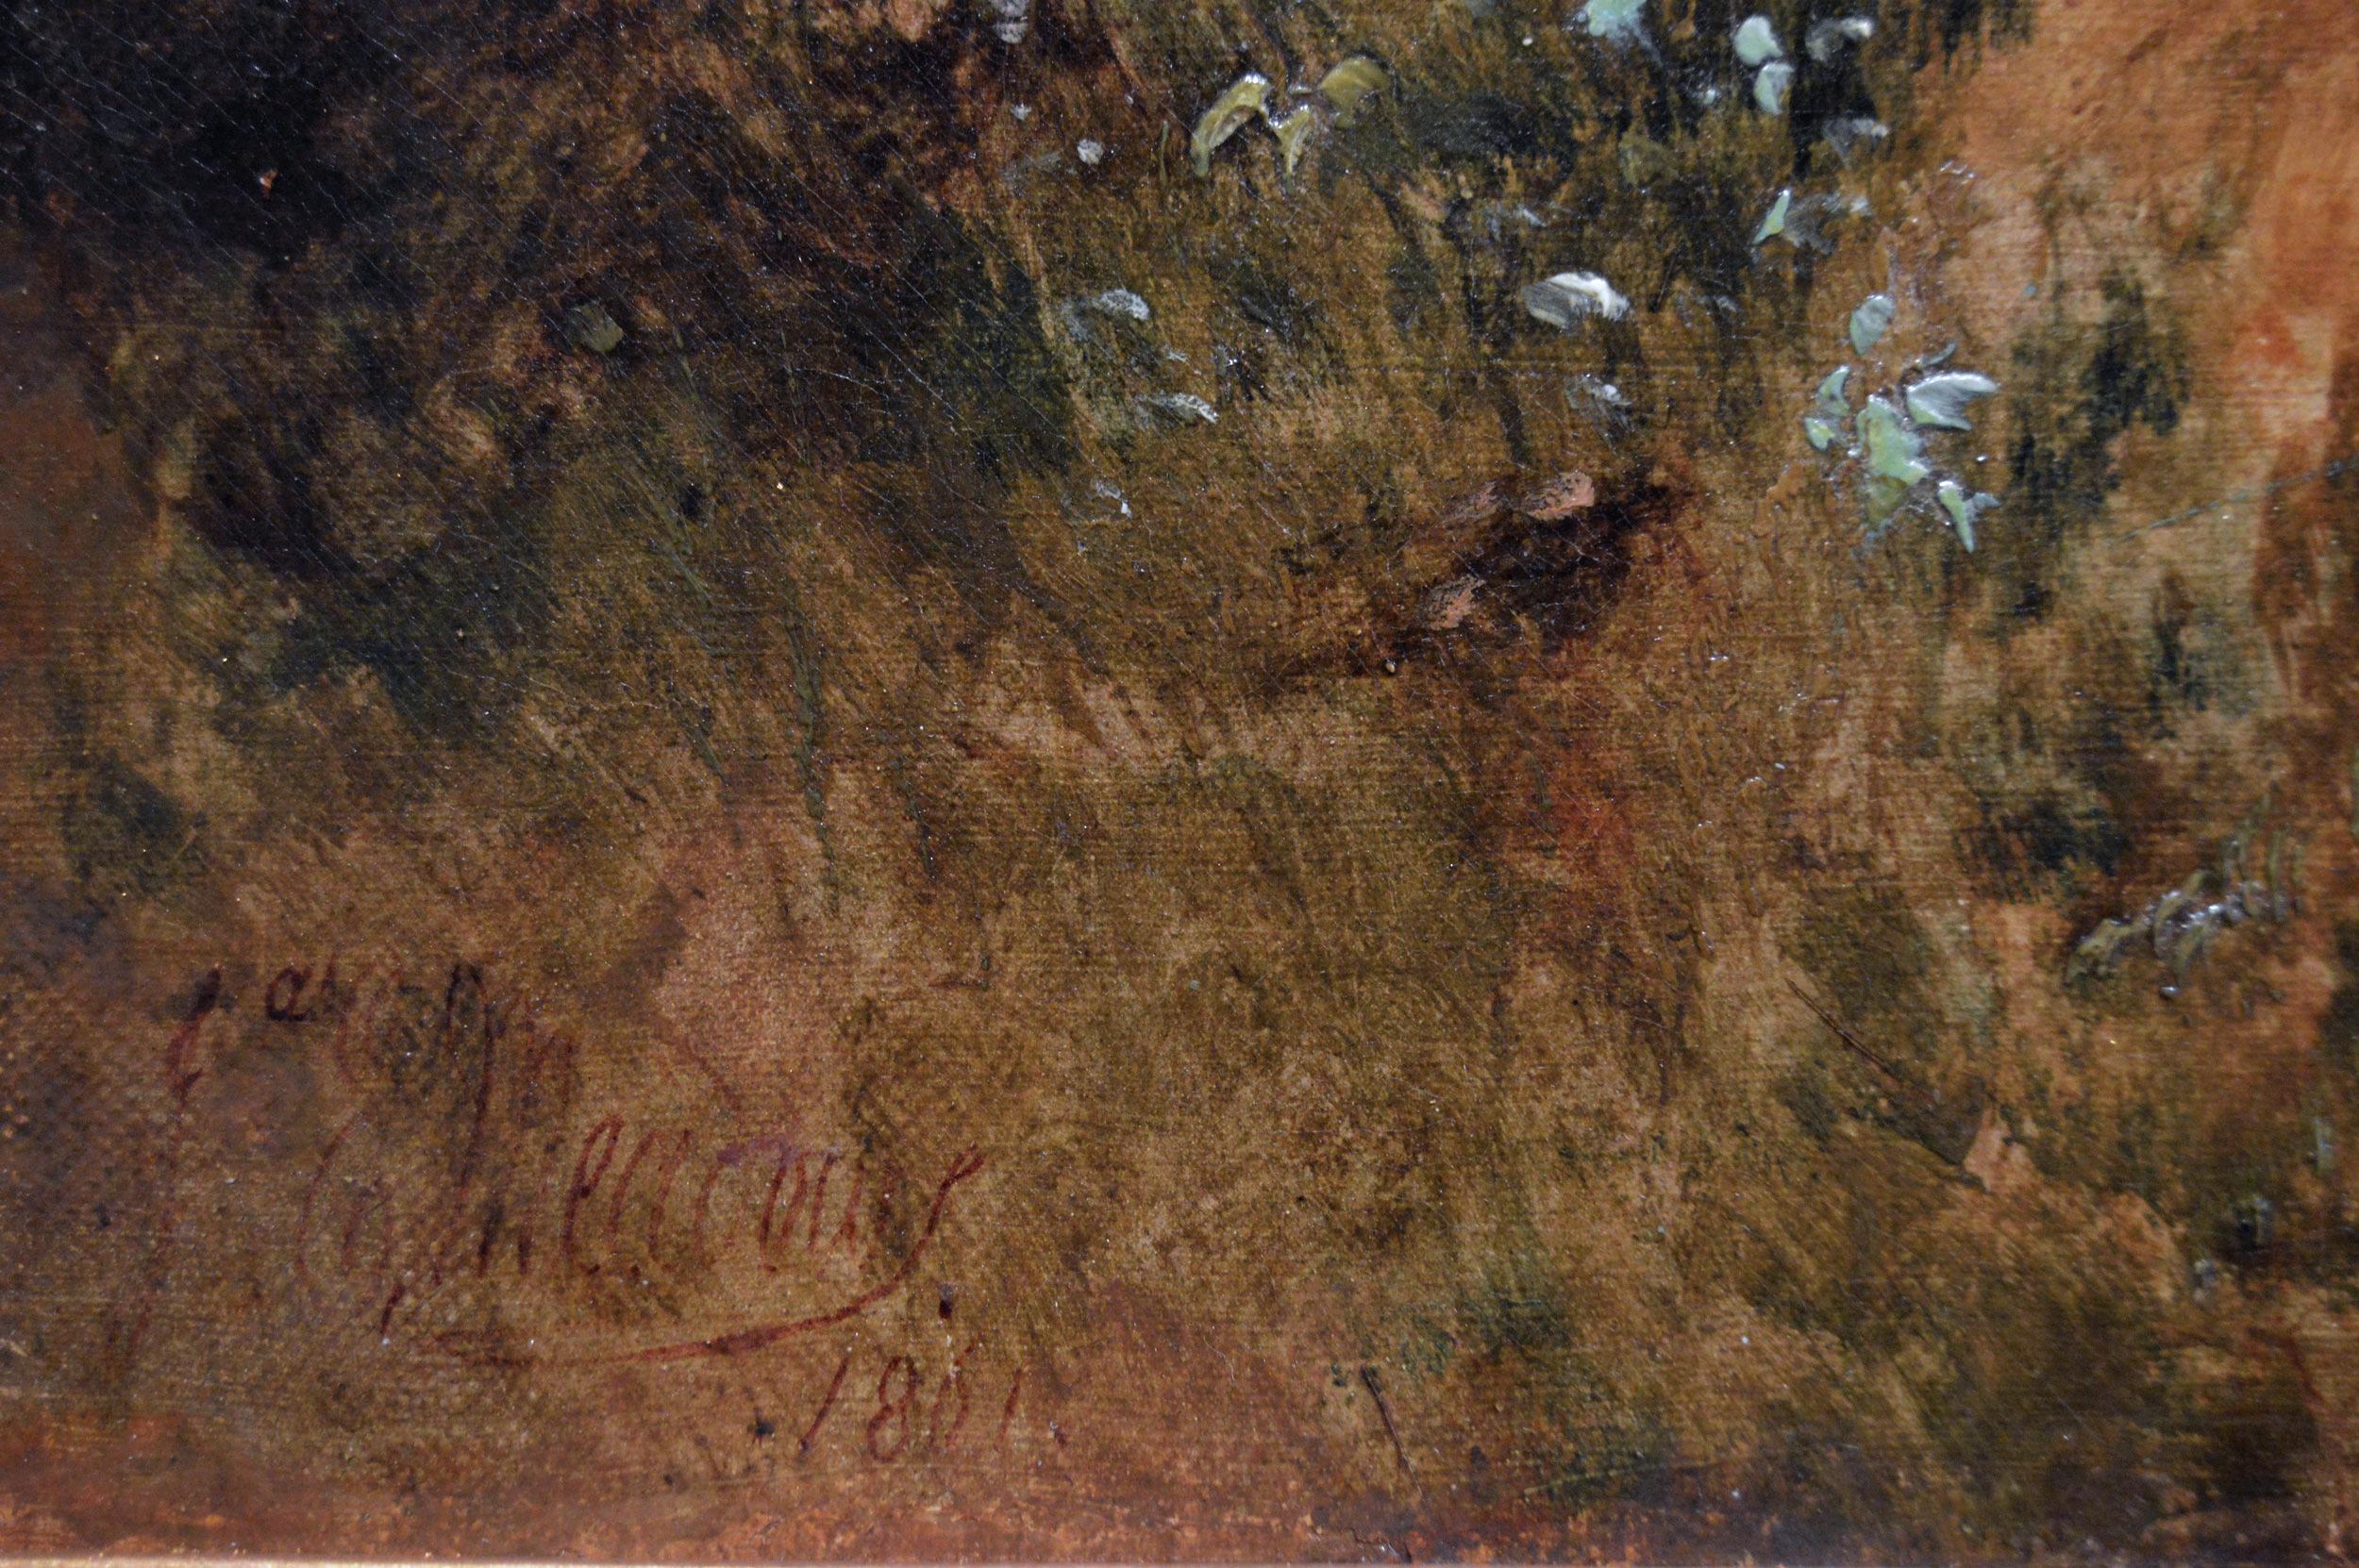 James Edwin Meadows
Britannique, (1828-1888)
Un chemin de campagne
Huile sur toile, signée et datée de 1861
Taille de l'image : 29,5 pouces x 47,5 pouces
Dimensions, y compris le cadre : 36,5 pouces x 54,5 pouces

James Edwin Meadows est né à Essex